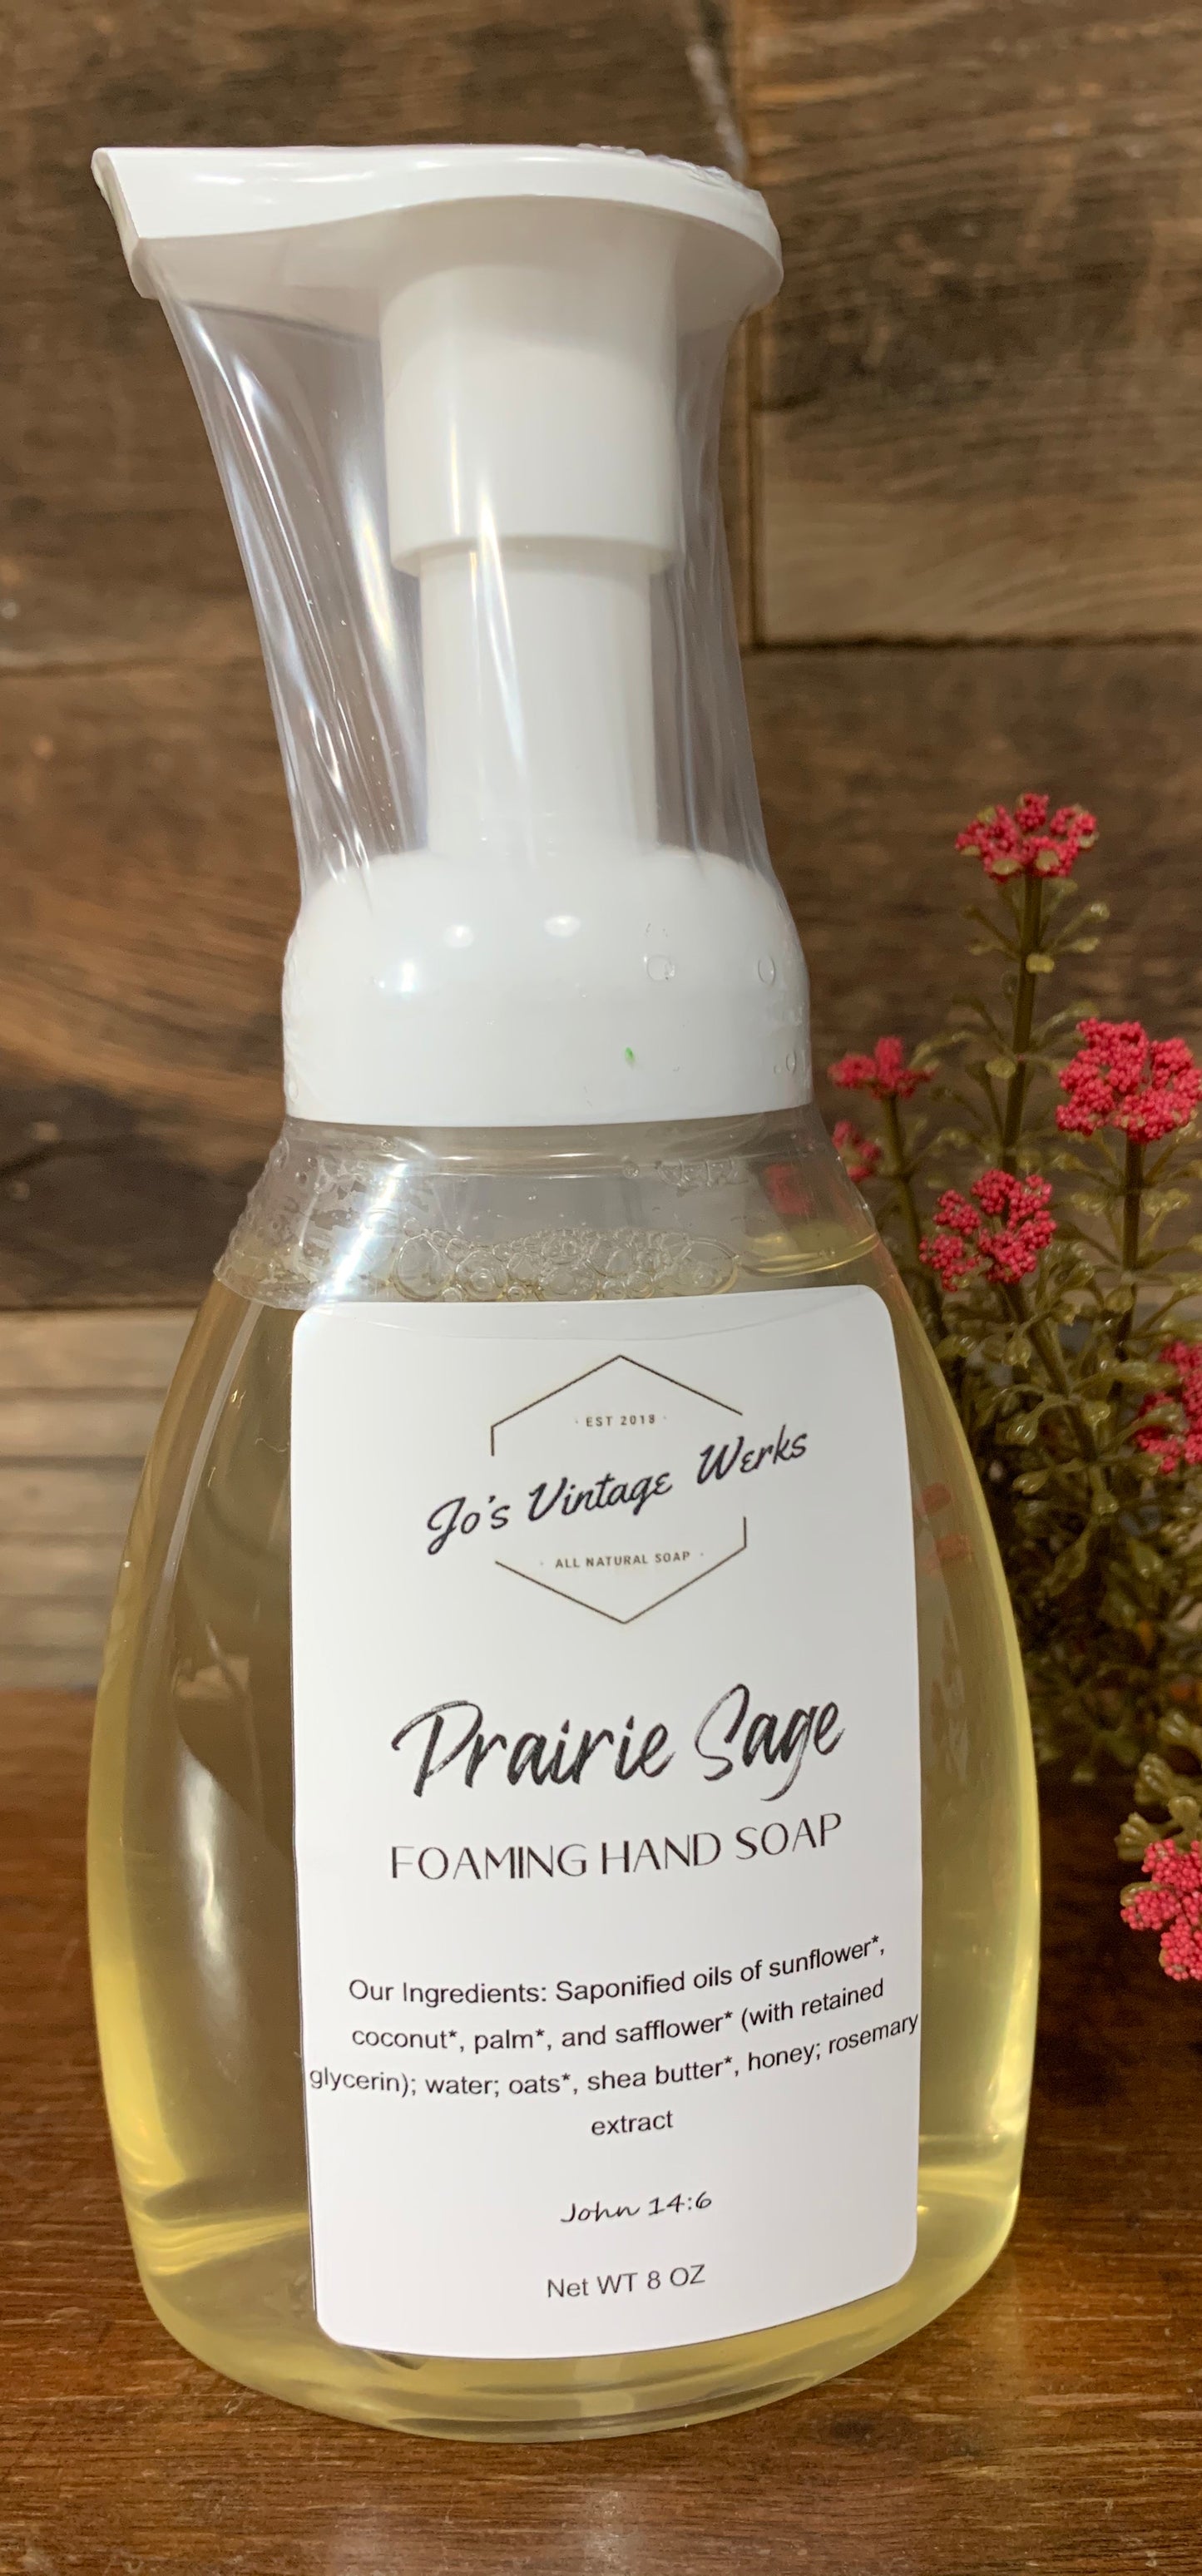 Prairie Sage Foaming Hand Soap - Jo’s Vintage Werks